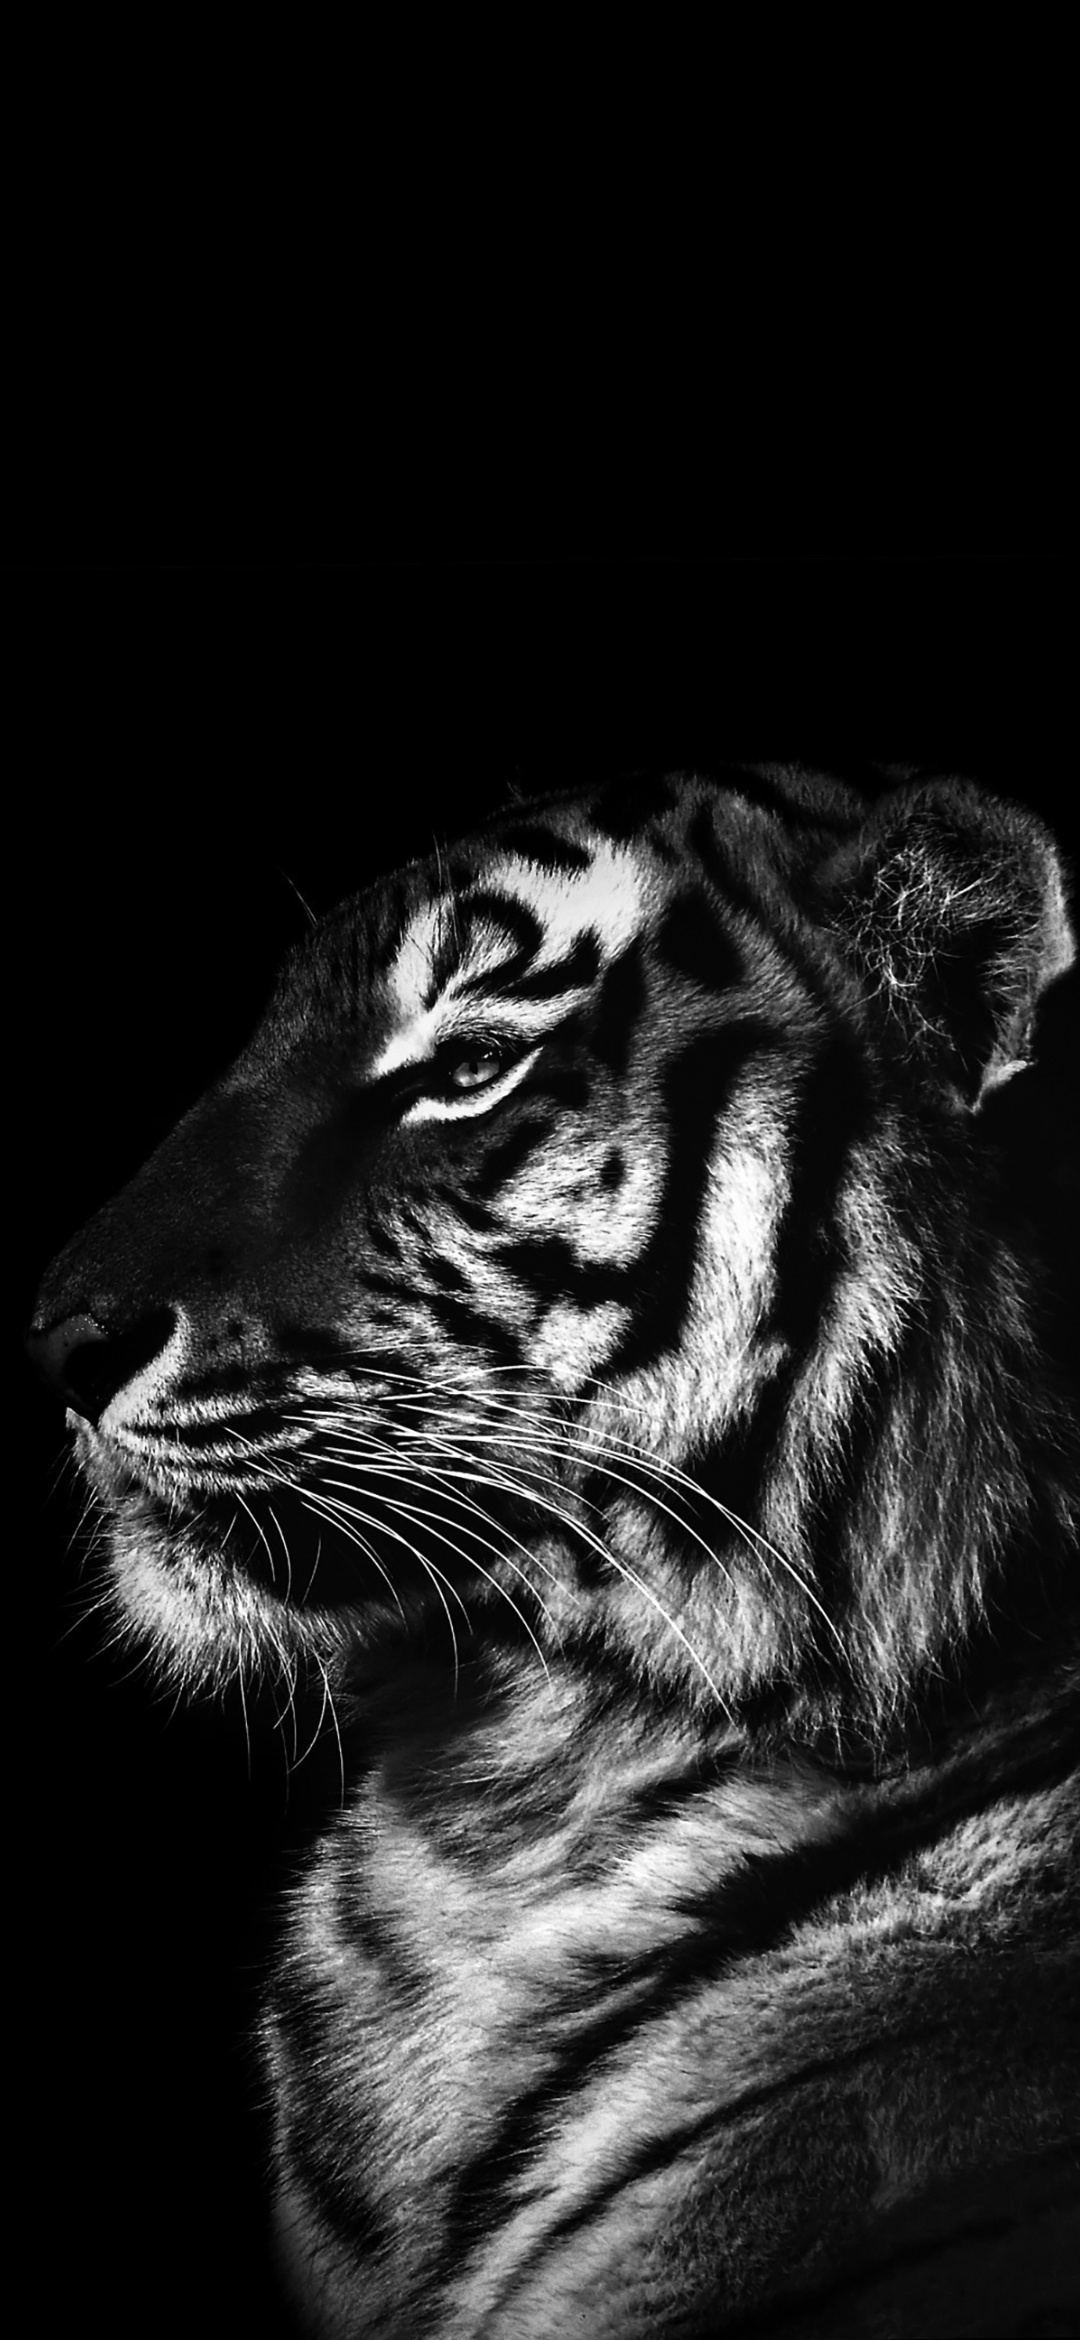 黑色和白色的 狮子 海报 苏门答腊虎 黑虎高清壁纸 动物图片 桌面背景和图片